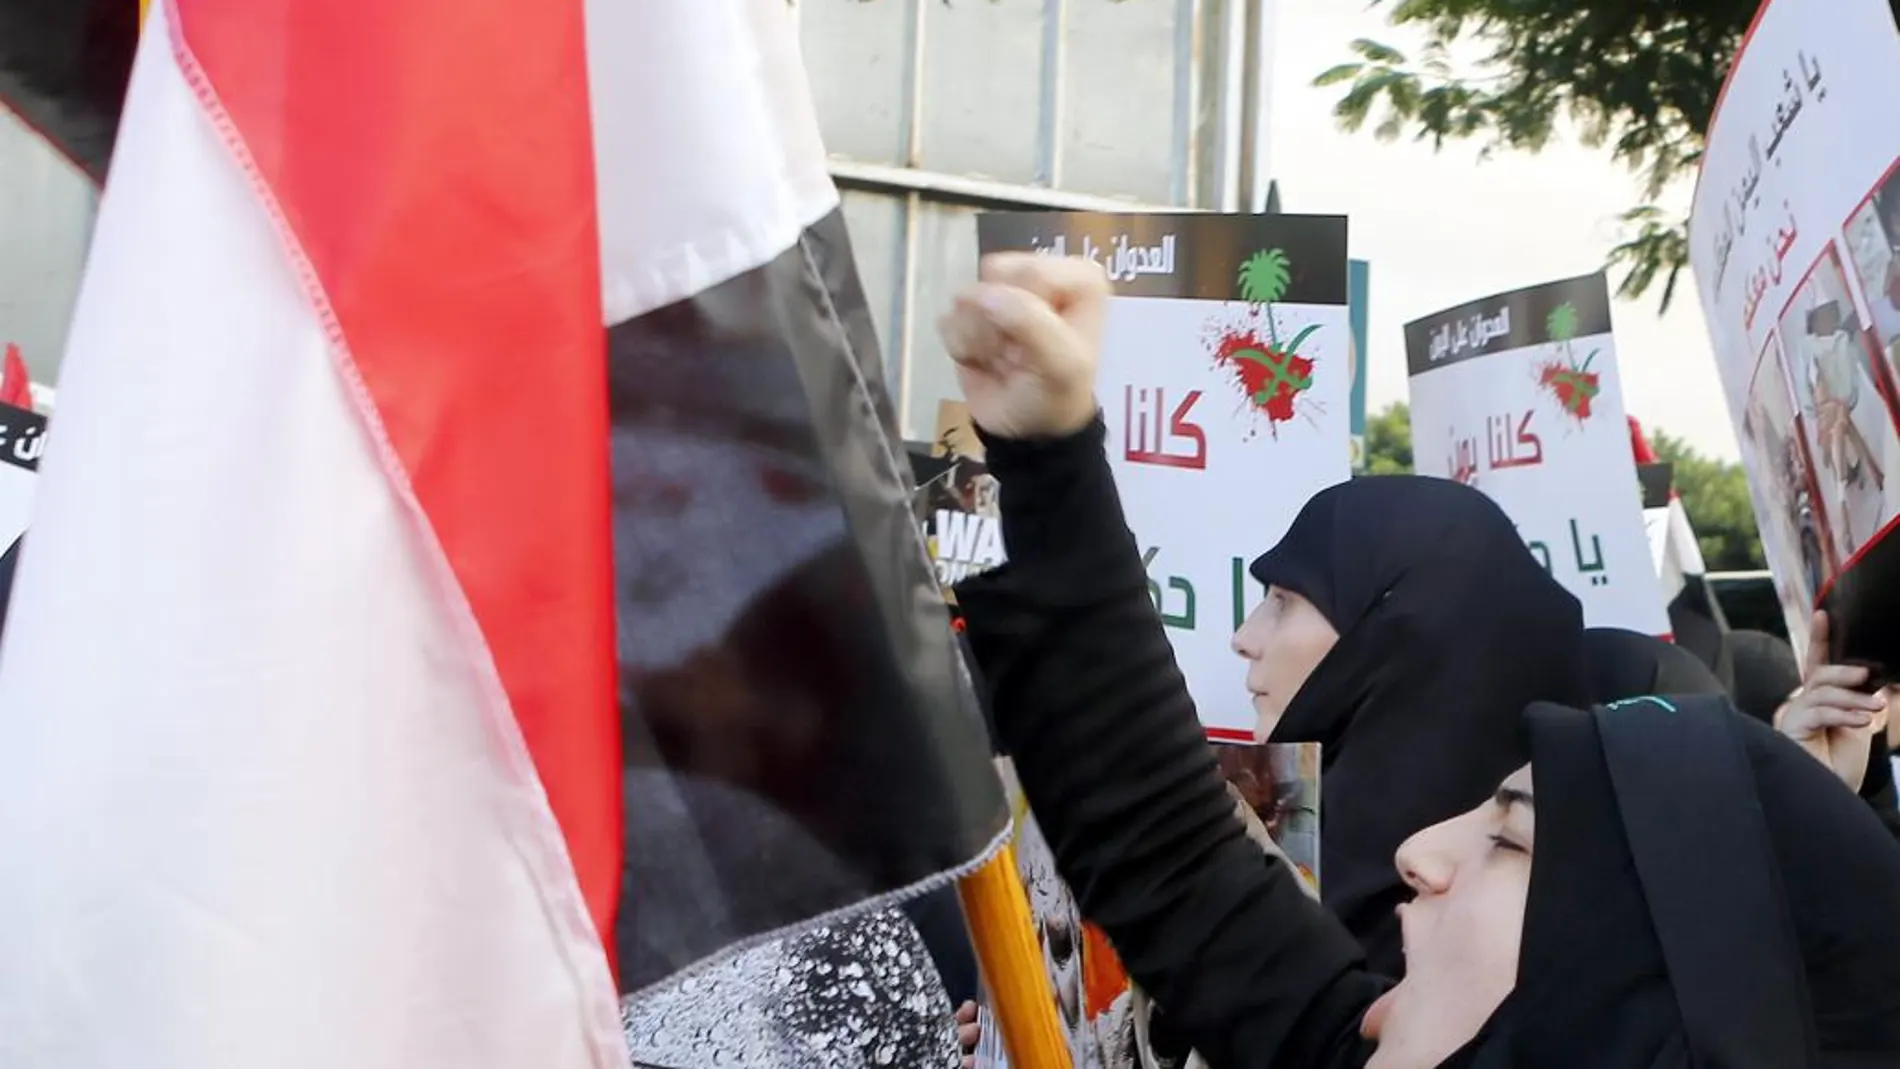 Simpatizantes de Hizbulá y de partidos nacionalistas libaneses muestran mensajes como "Muerte a América"